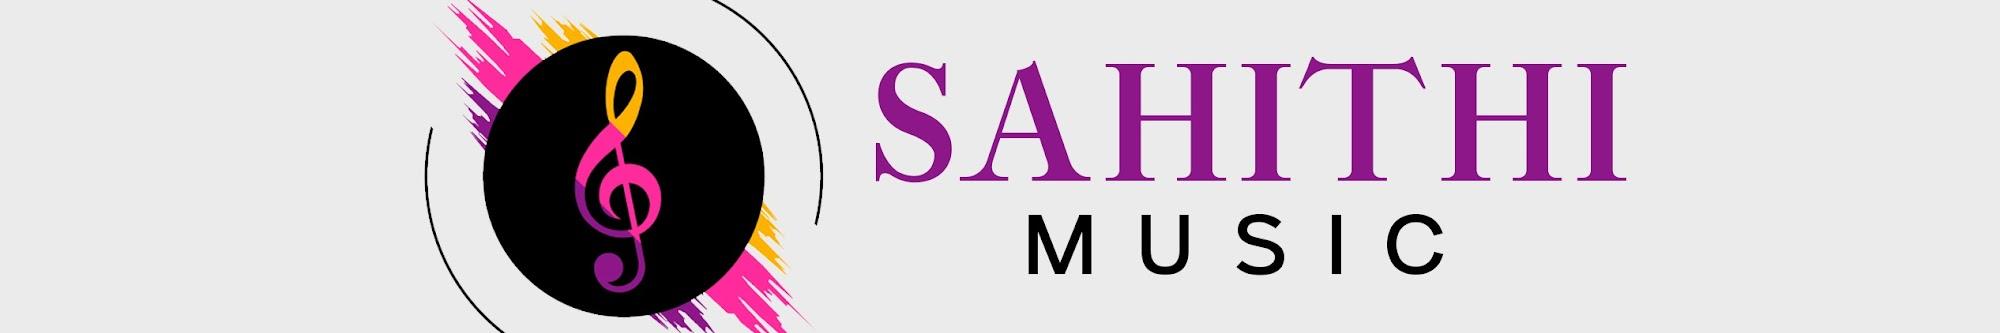 Sahithi Music